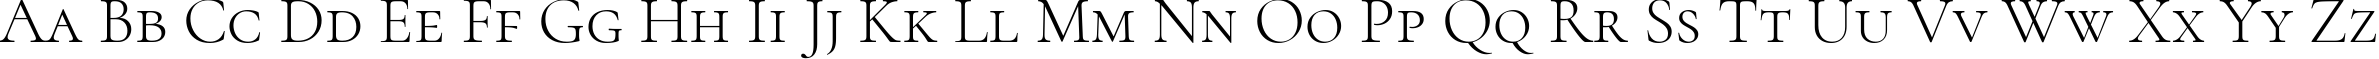 Пример написания английского алфавита шрифтом Cormorant SC Light